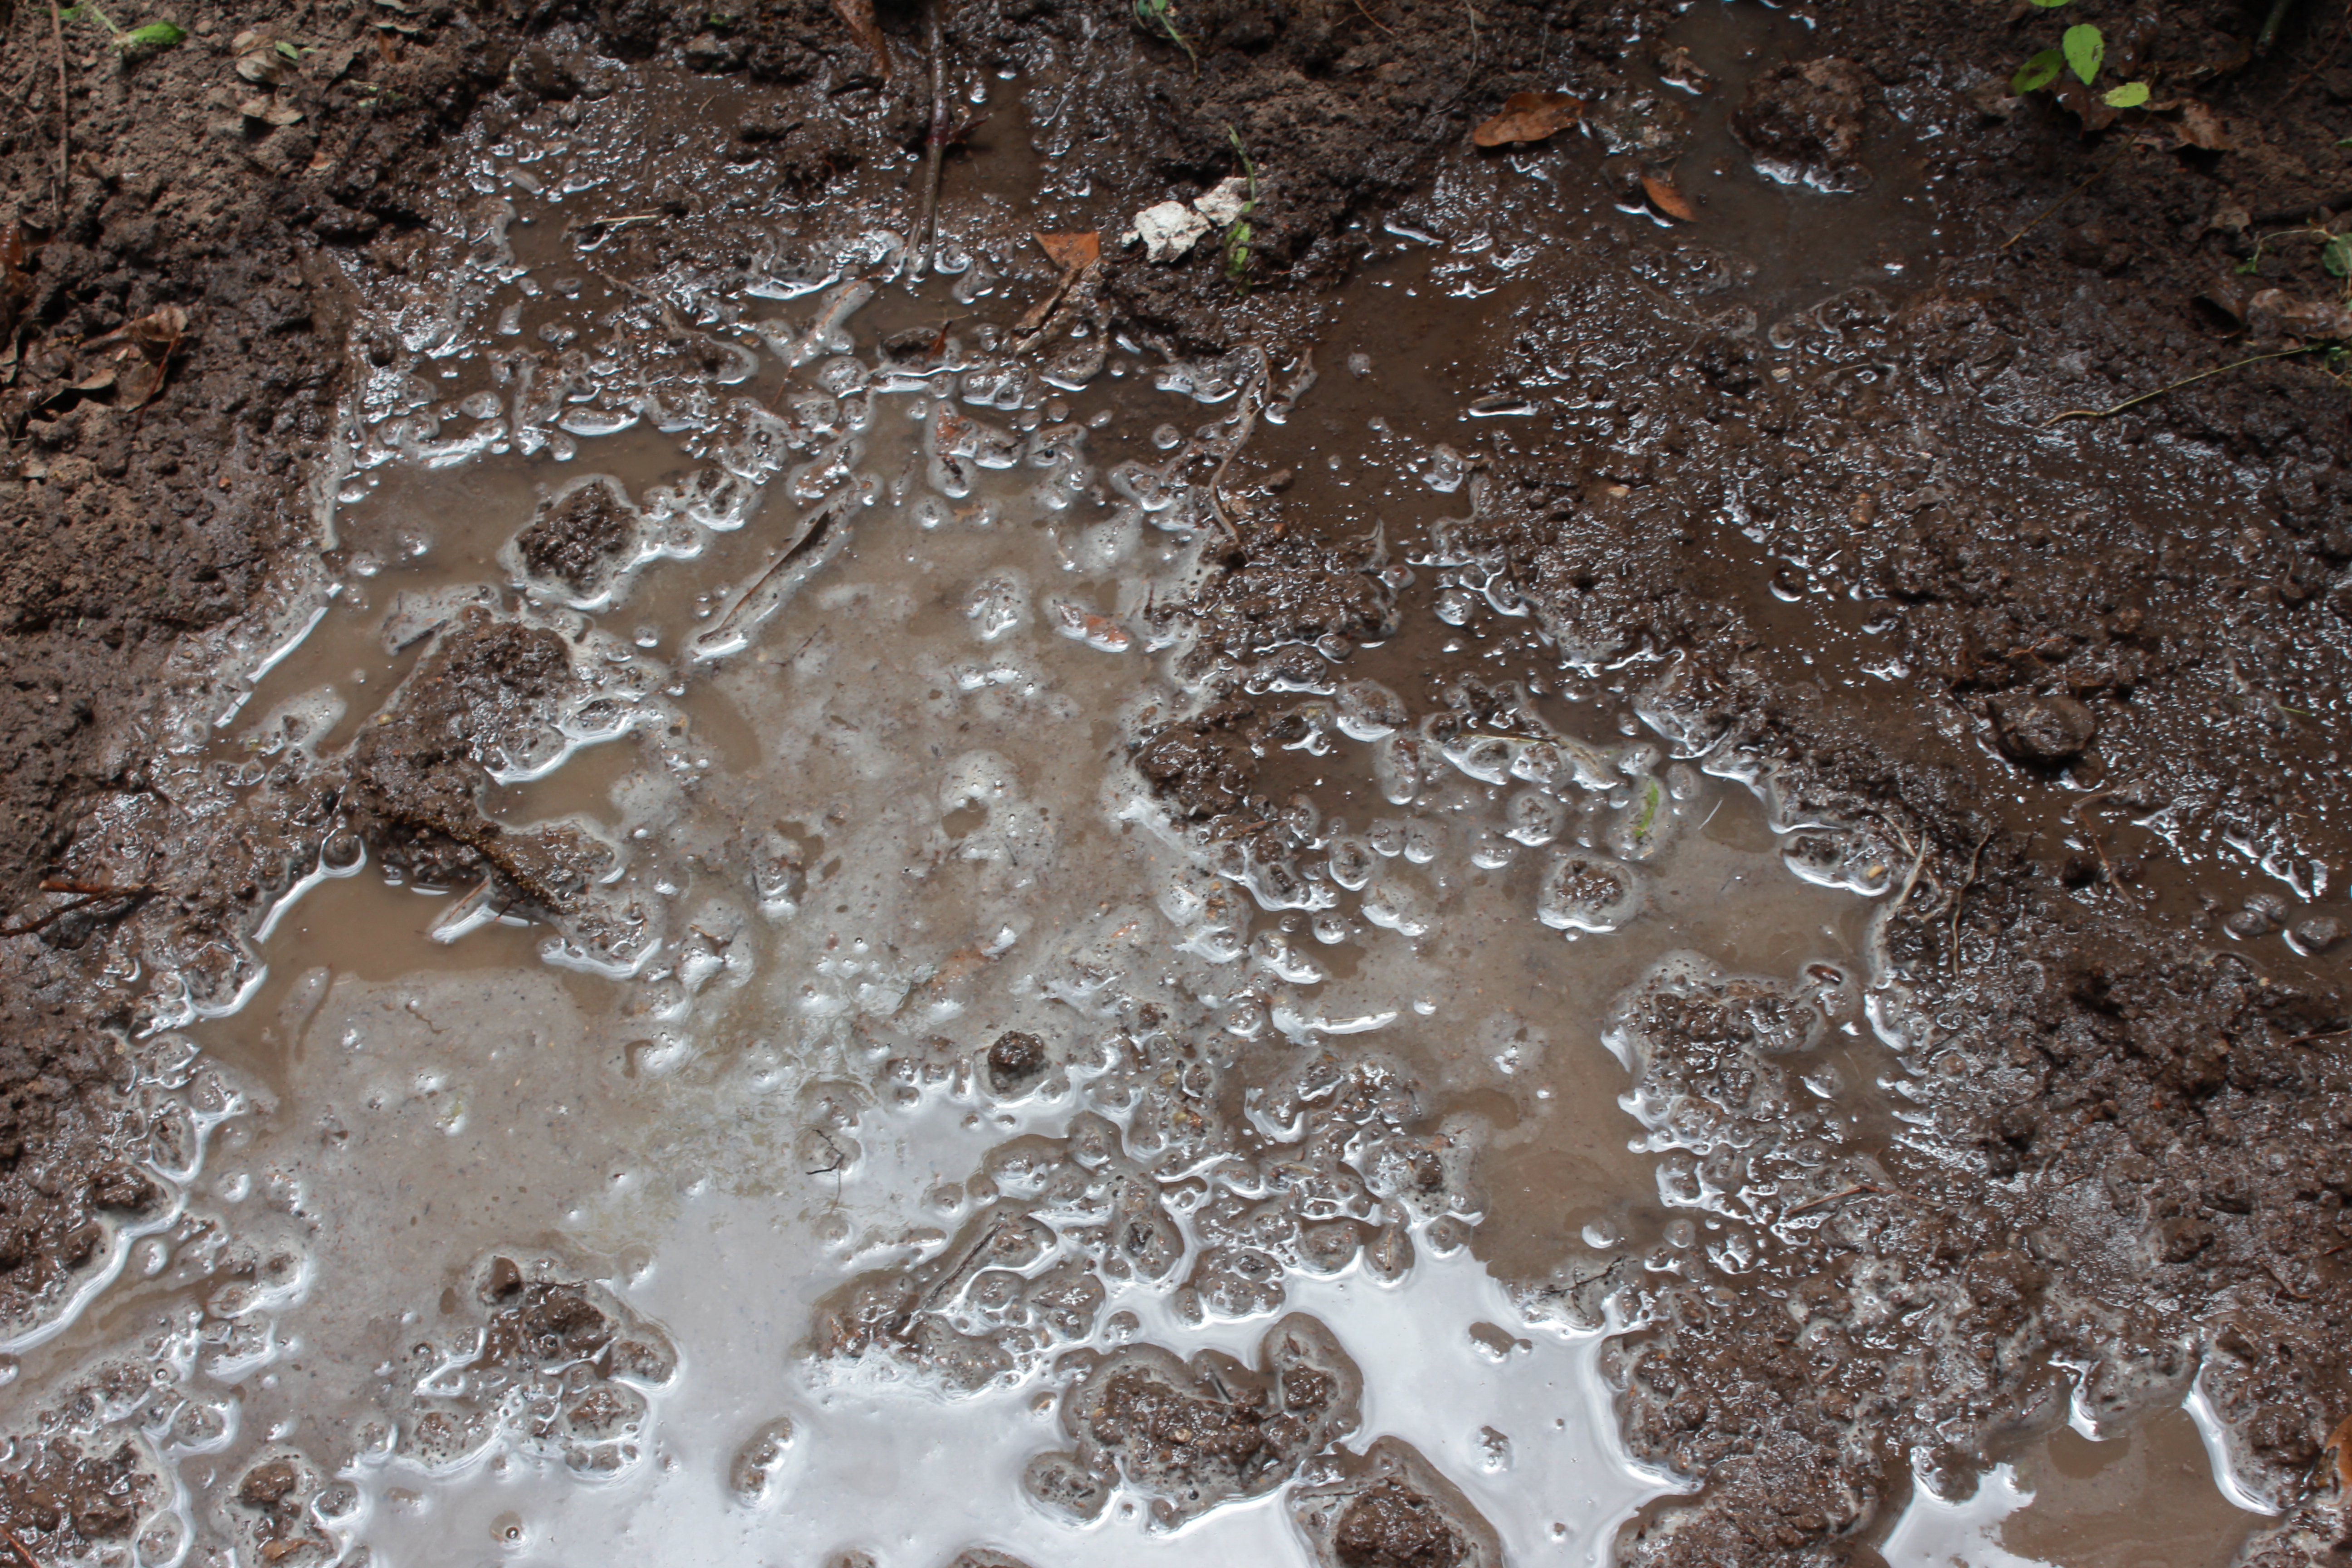 File:Dirt and Mud 005 - Muddy Water.jpg - Wikimedia Commons